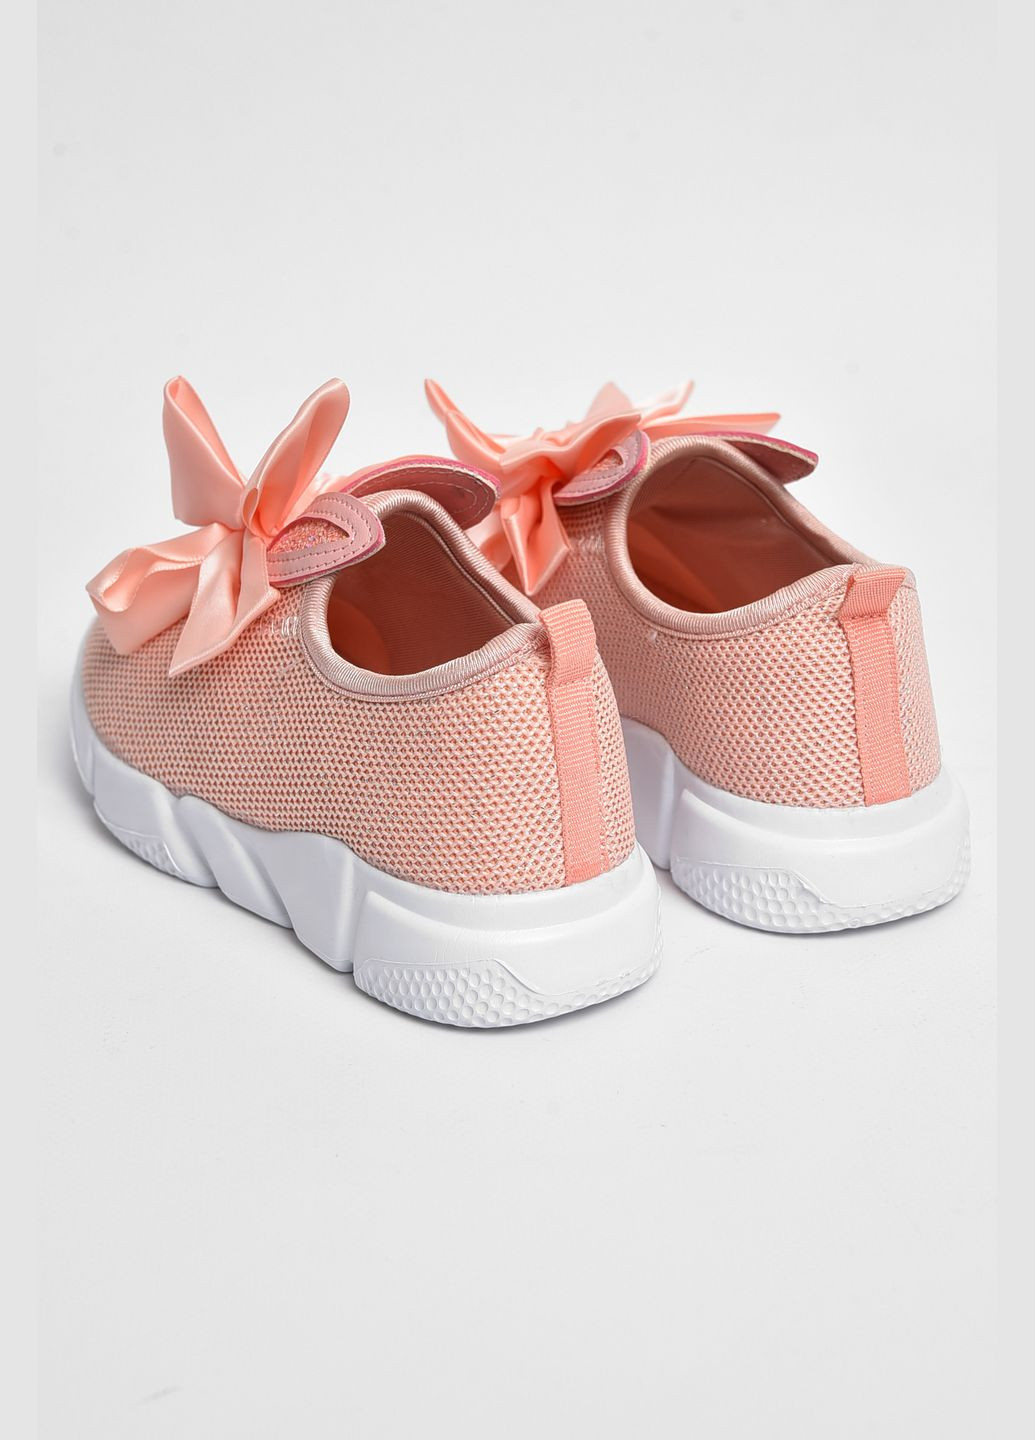 Розовые демисезонные кроссовки детские текстильные розового цвета Let's Shop